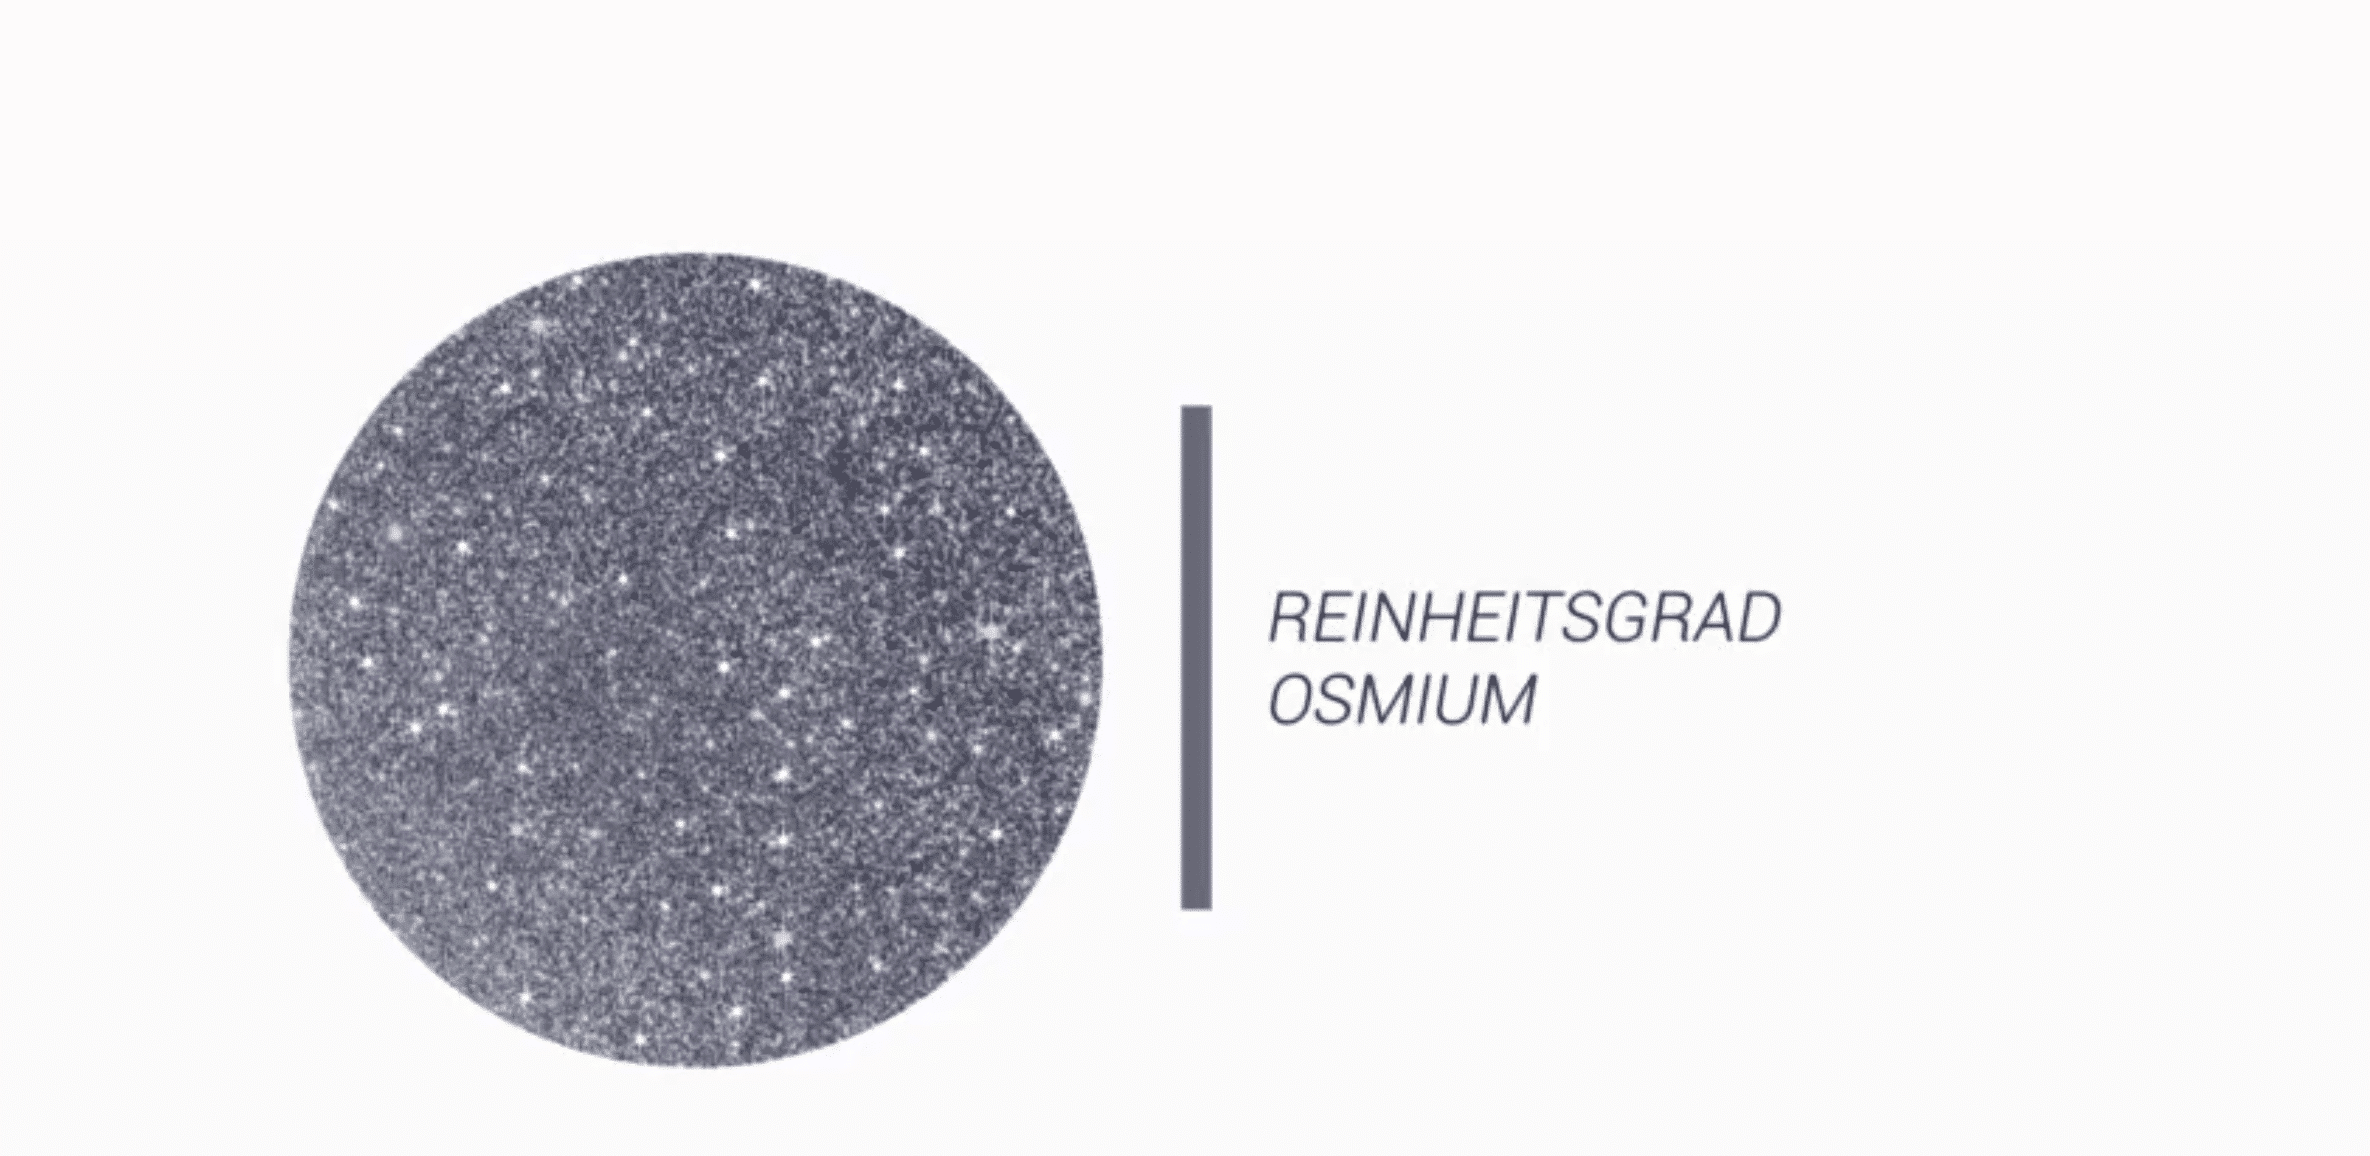 Reinheitsgrad Osmium